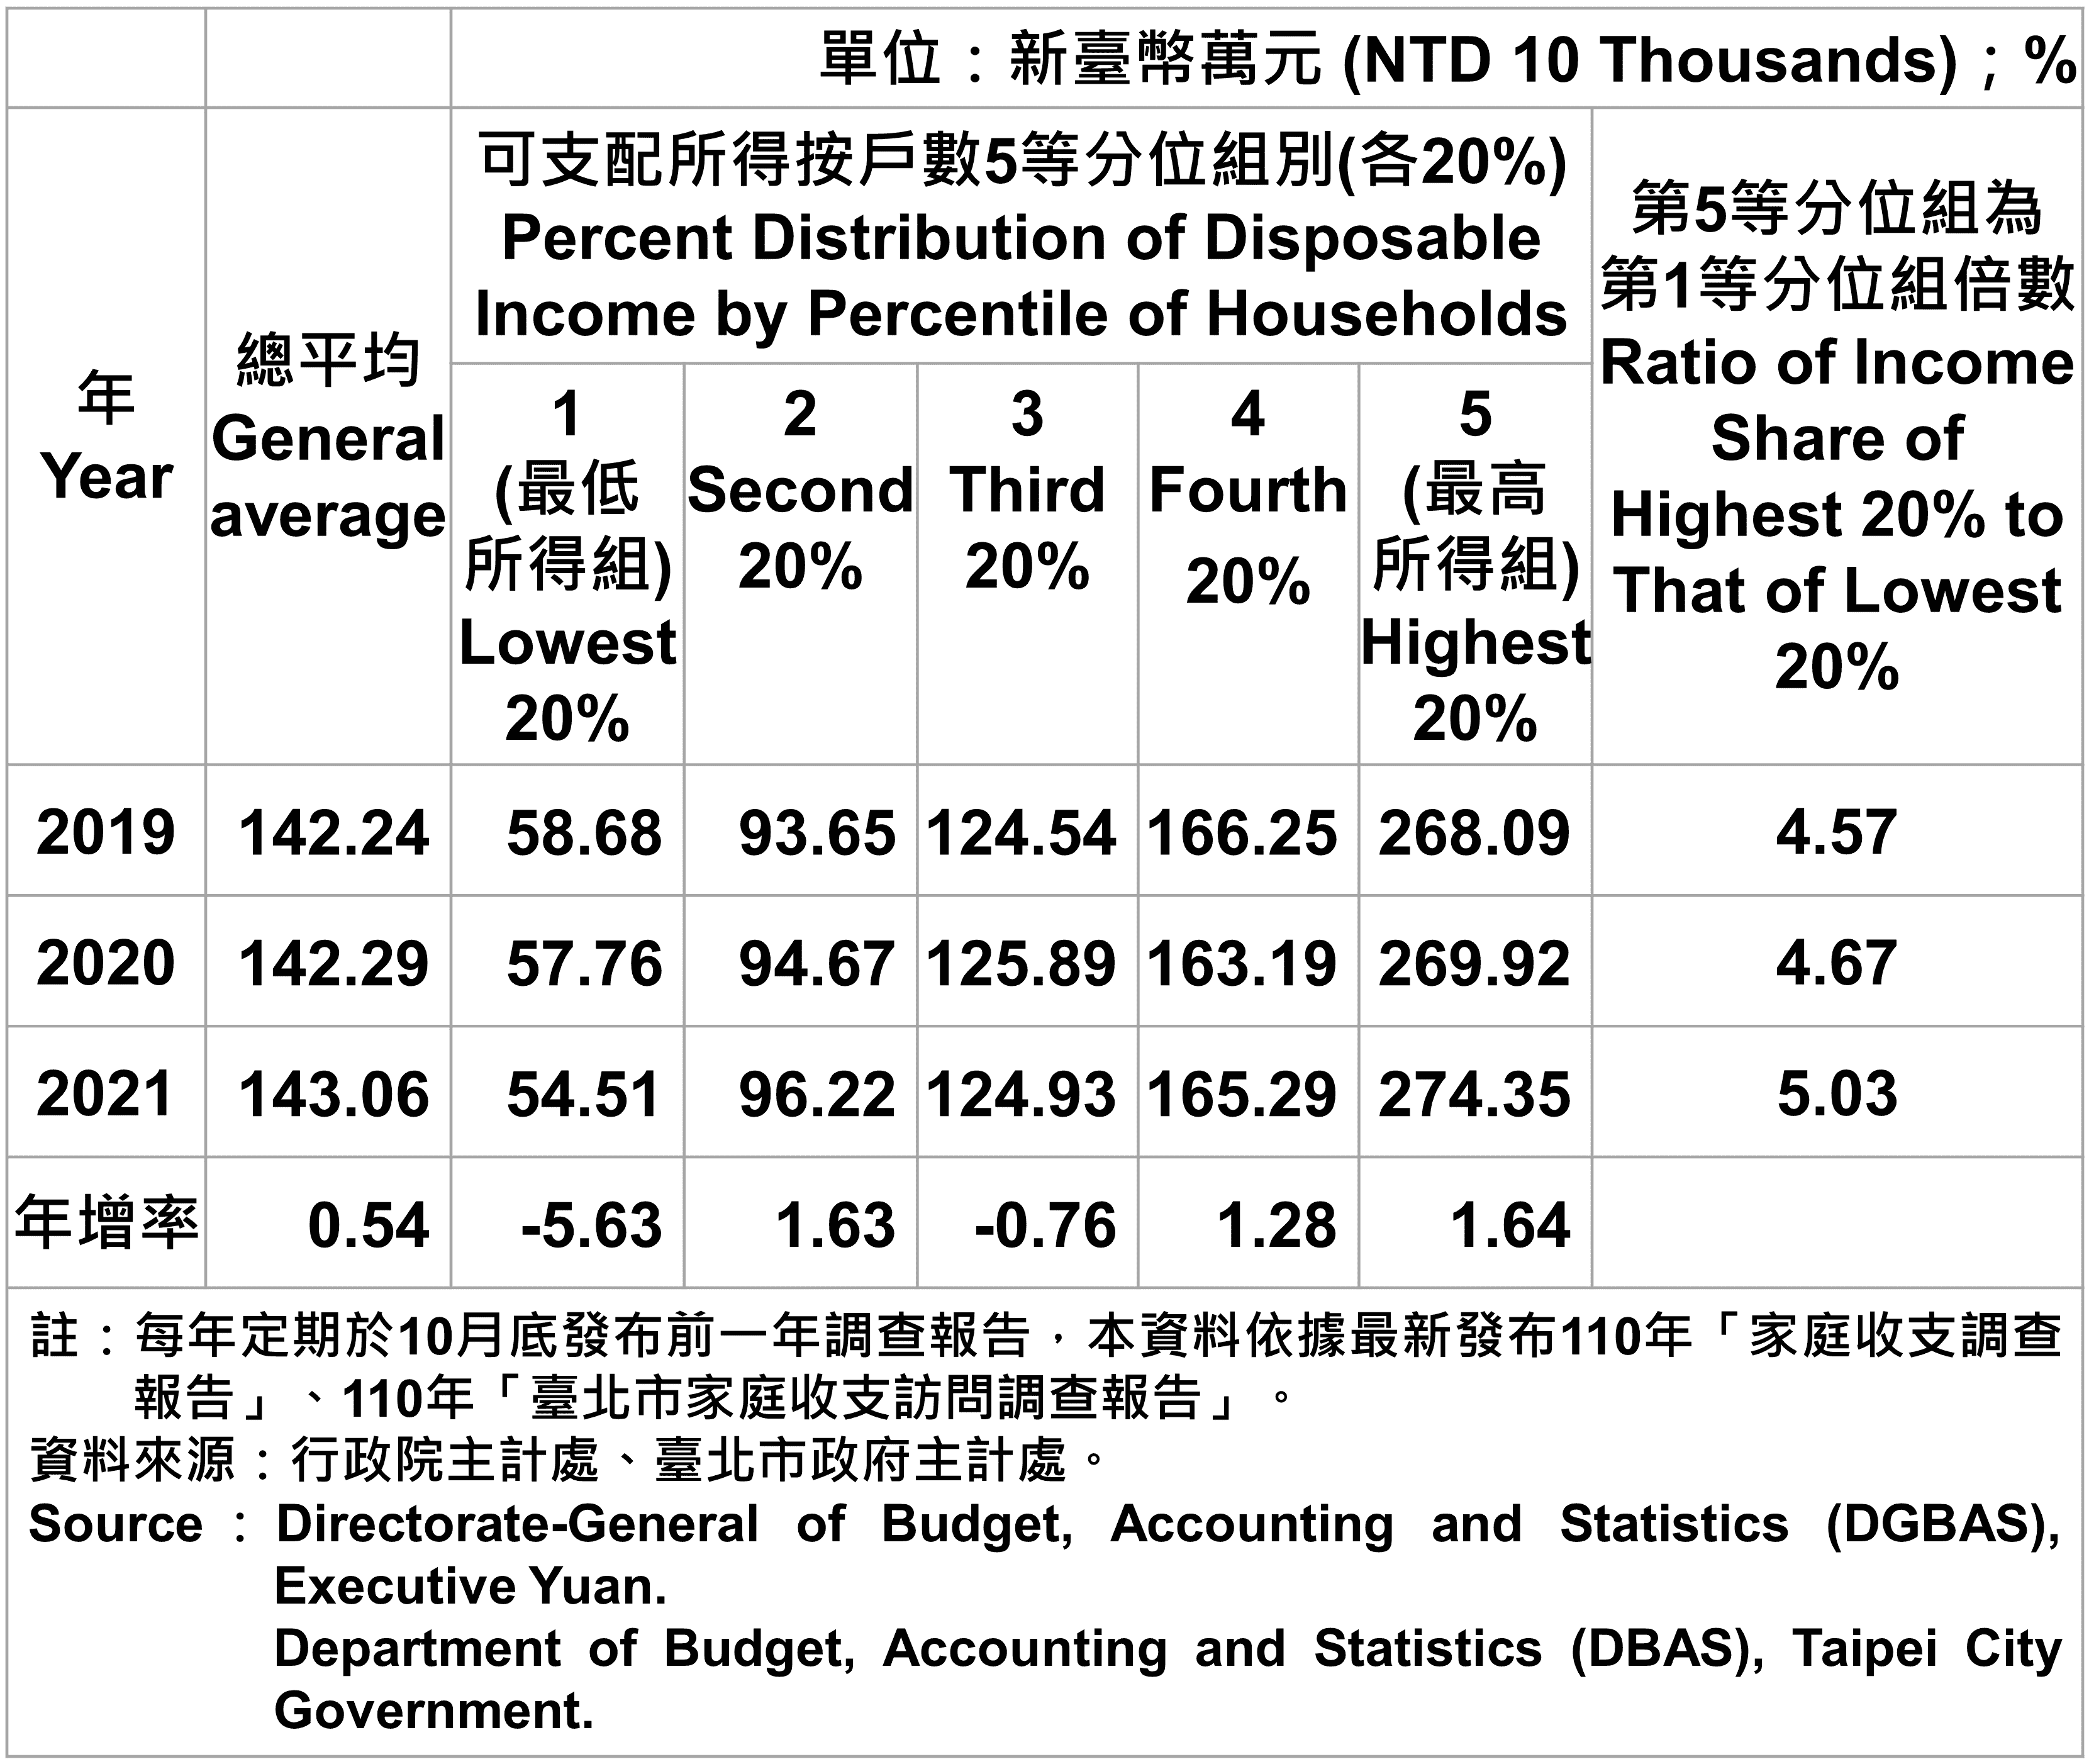 臺北市戶數五等分位組之平均每戶可支配所得—20201 Average Family Income and Expenditure per Household by Five Equal In Taipei—2021